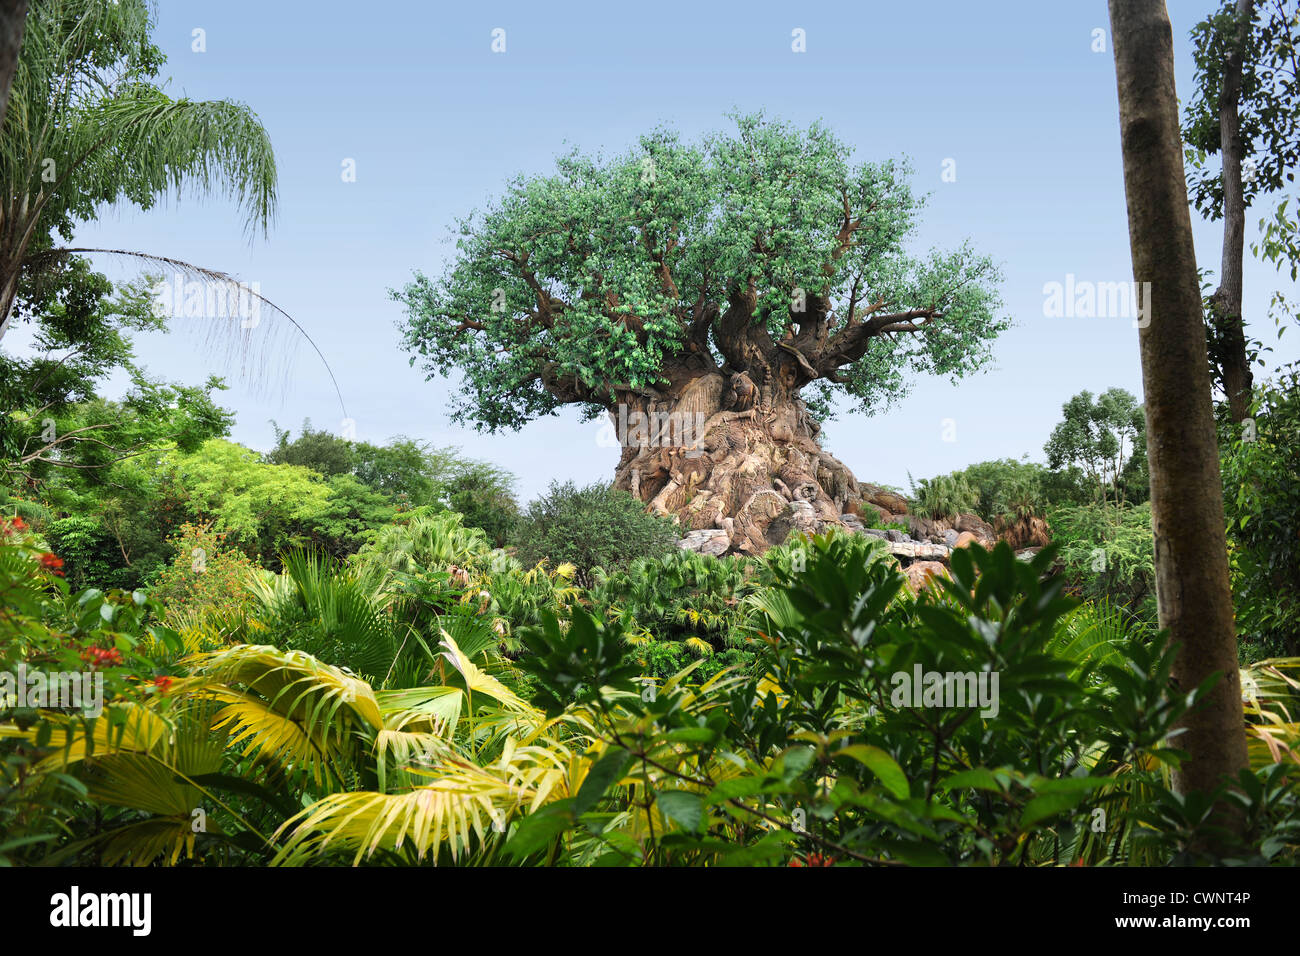 ORLANDO, Florida - Junio 05, 2012: El árbol de la vida en el Reino Animal de Disney Foto de stock